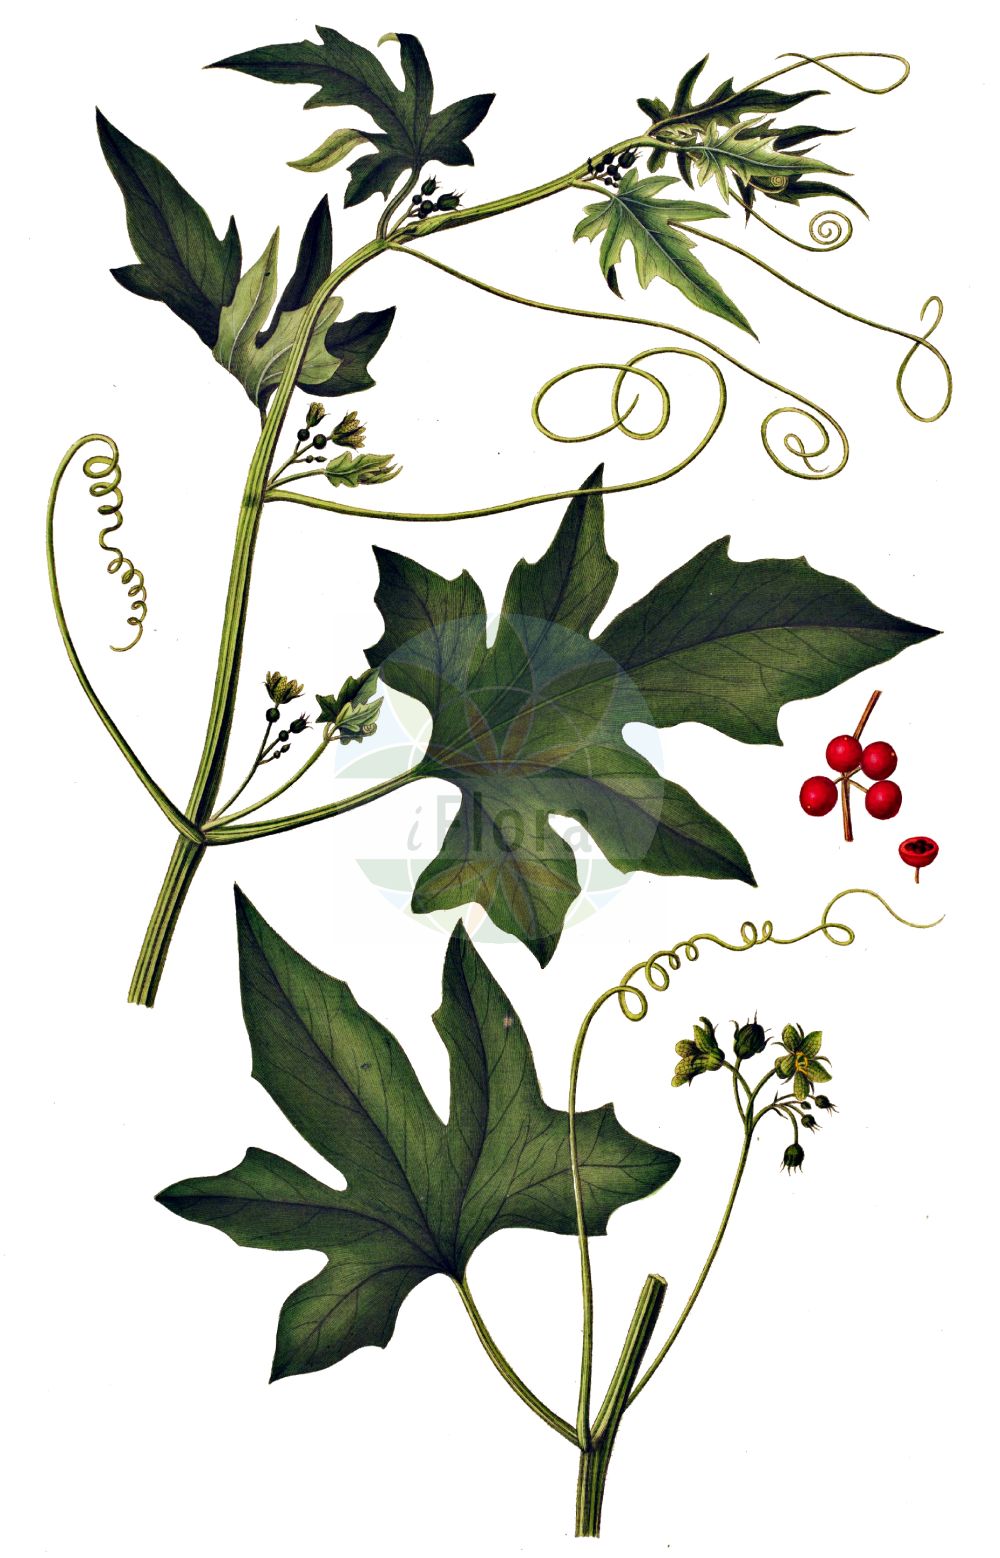 Historische Abbildung von Bryonia dioica (Rotfrüchtige Zaunrübe - White Bryony). Das Bild zeigt Blatt, Bluete, Frucht und Same. ---- Historical Drawing of Bryonia dioica (Rotfrüchtige Zaunrübe - White Bryony). The image is showing leaf, flower, fruit and seed.(Bryonia dioica,Rotfrüchtige Zaunrübe,White Bryony,Bryonia digyna,Bryonia dioica,Bryonia sicula,Rotfruechtige Zaunruebe,Rotbeerige Zaunruebe,Rote Zaunruebe,White Bryony,Common Bryony,Cretan Bryony,Red-berried Bryony,Red-berry Bryony,Red Bryony,Bryonia,Zaunrübe,Bryony,Cucurbitaceae,Kürbisgewächse,Cucurbit family,Blatt,Bluete,Frucht,Same,leaf,flower,fruit,seed,Oeder (1761-1883))